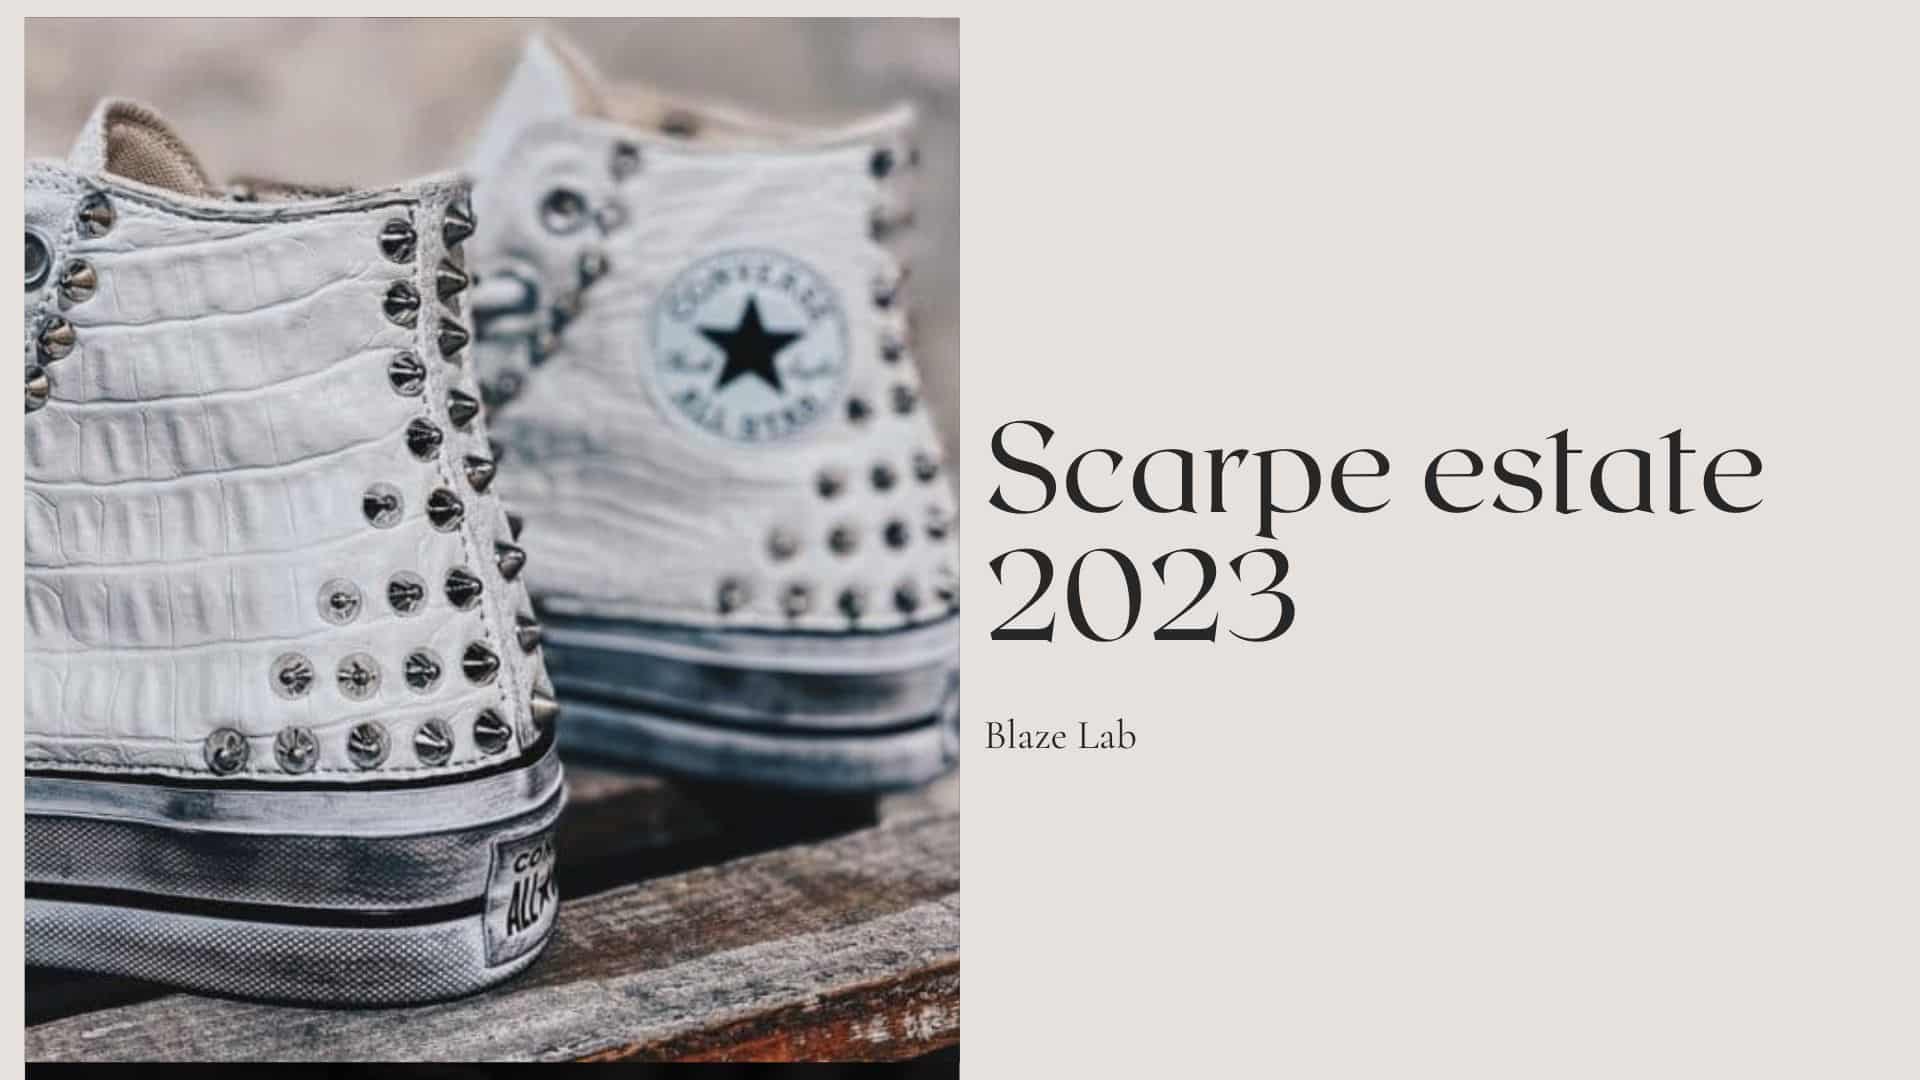 scarpe estate 2023